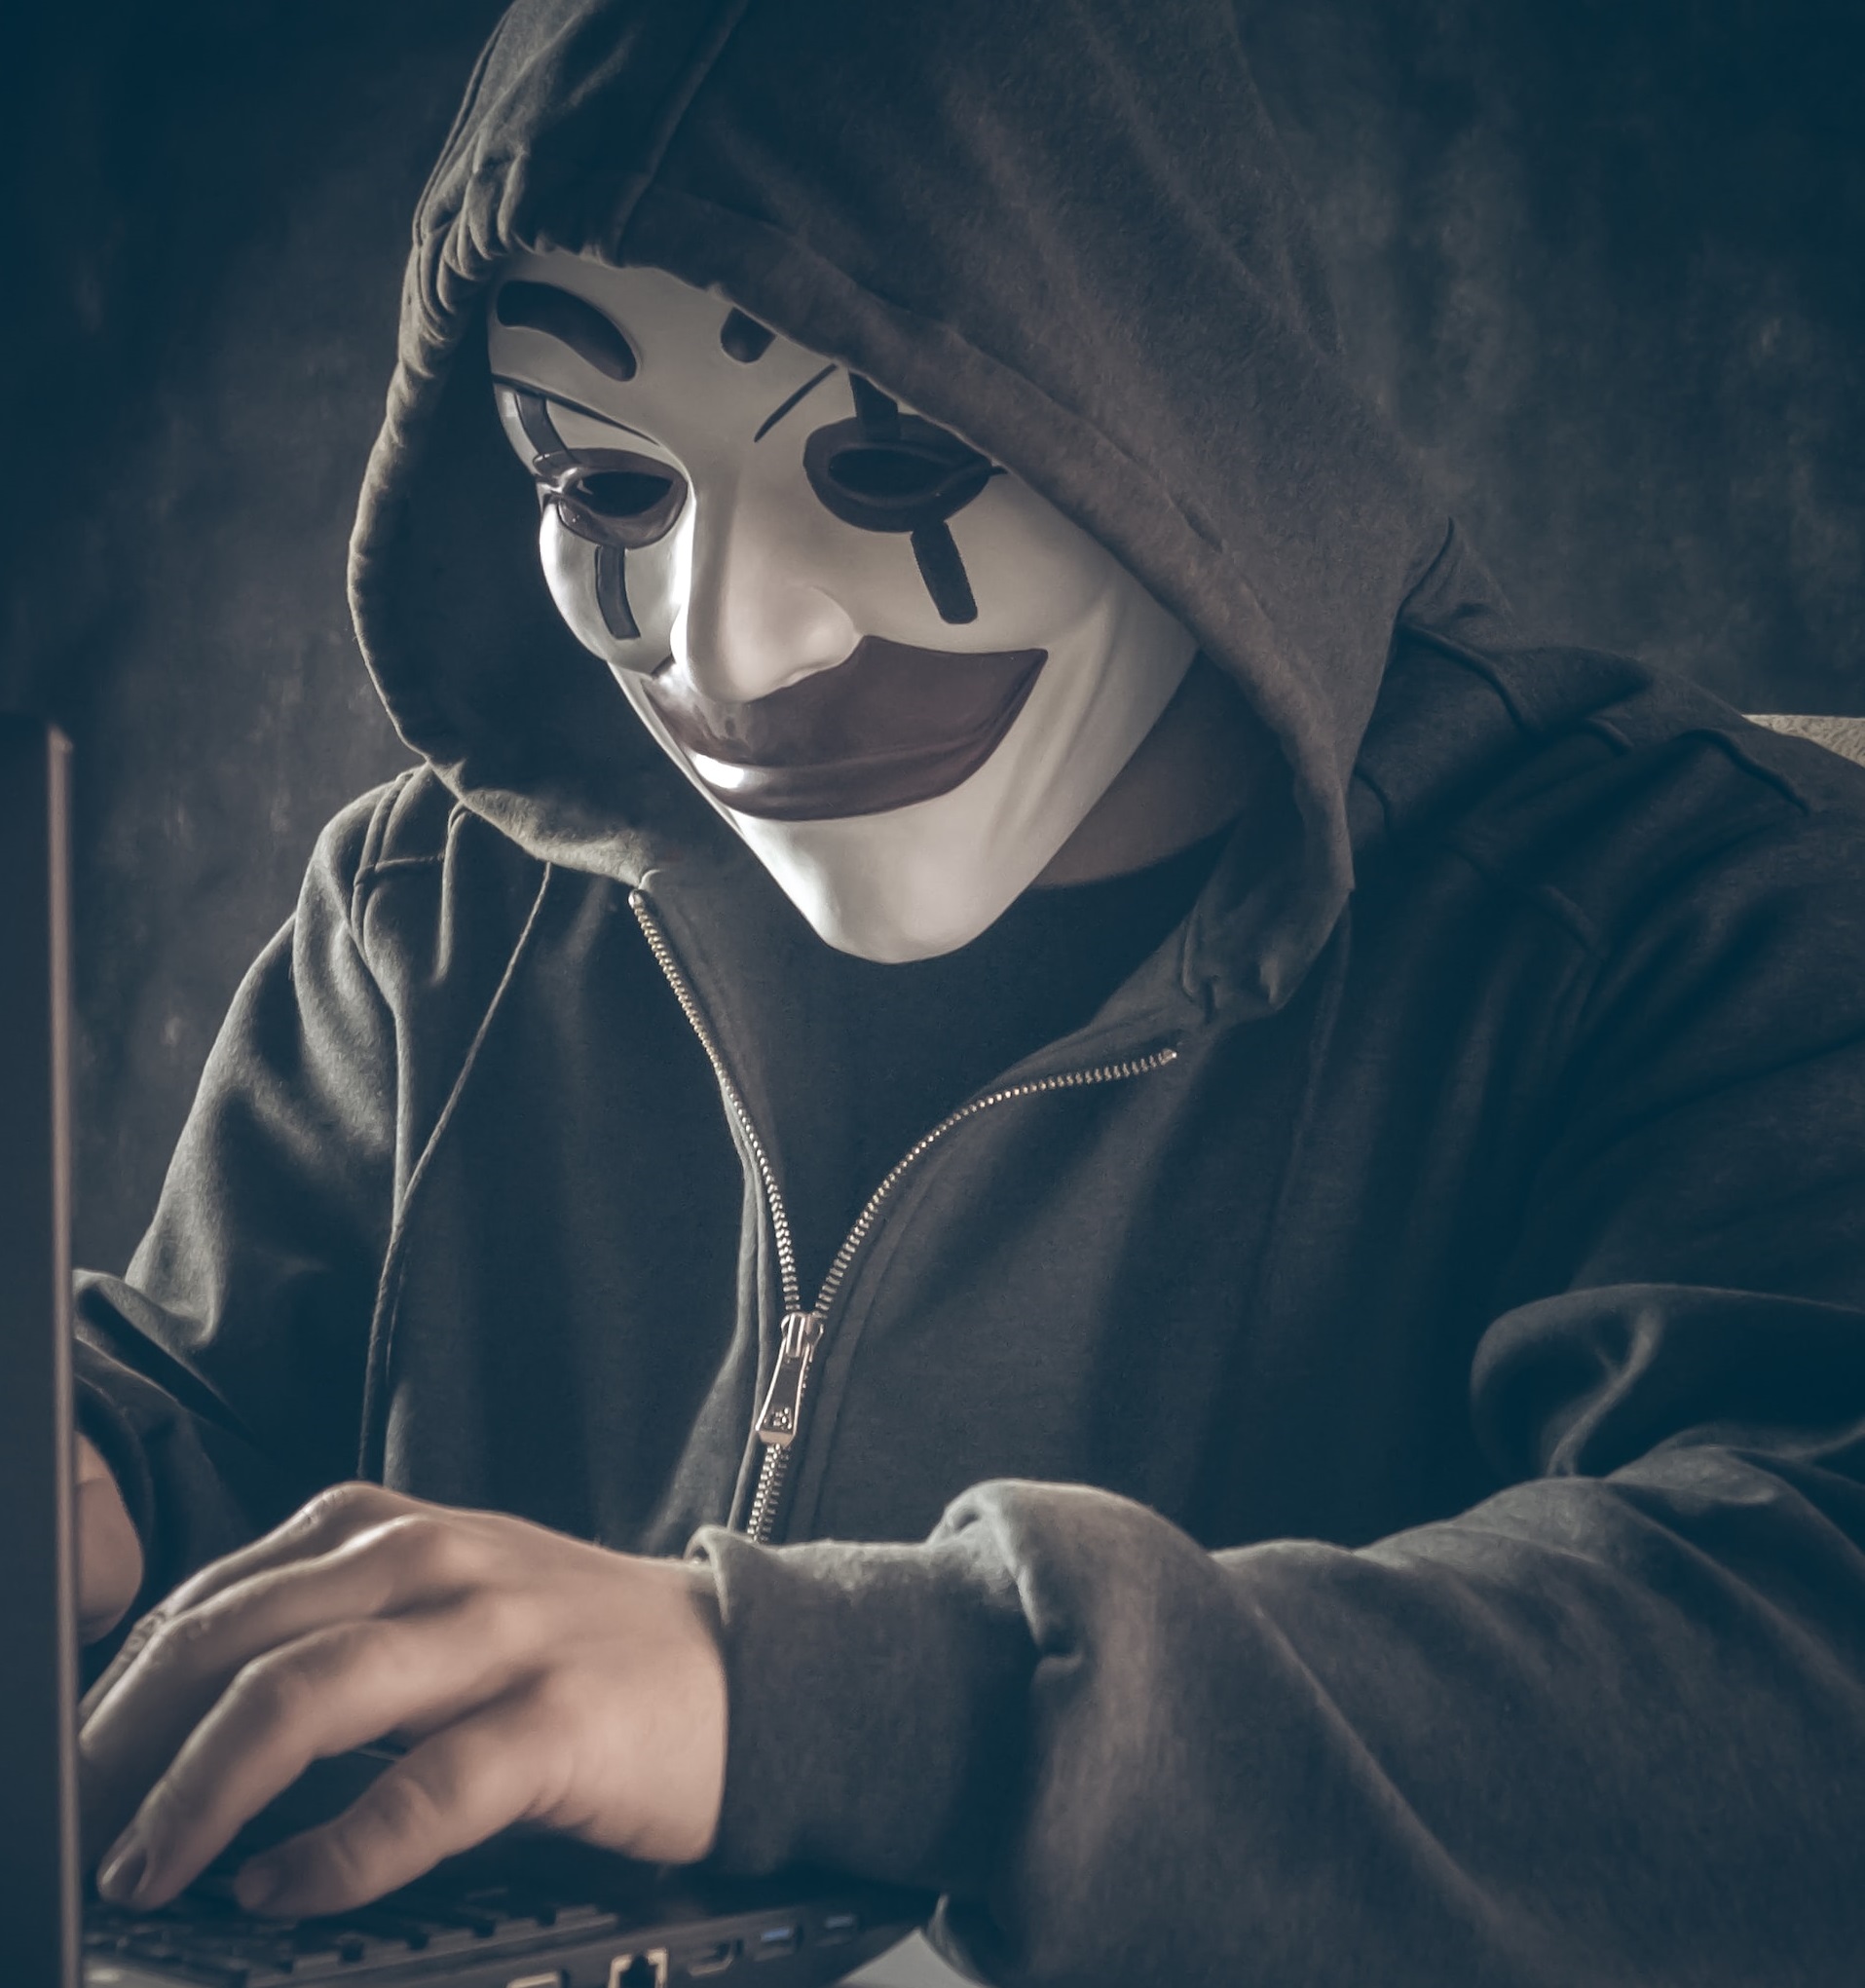 ऑनलाइन धोखाधड़ी - यह कौन है?